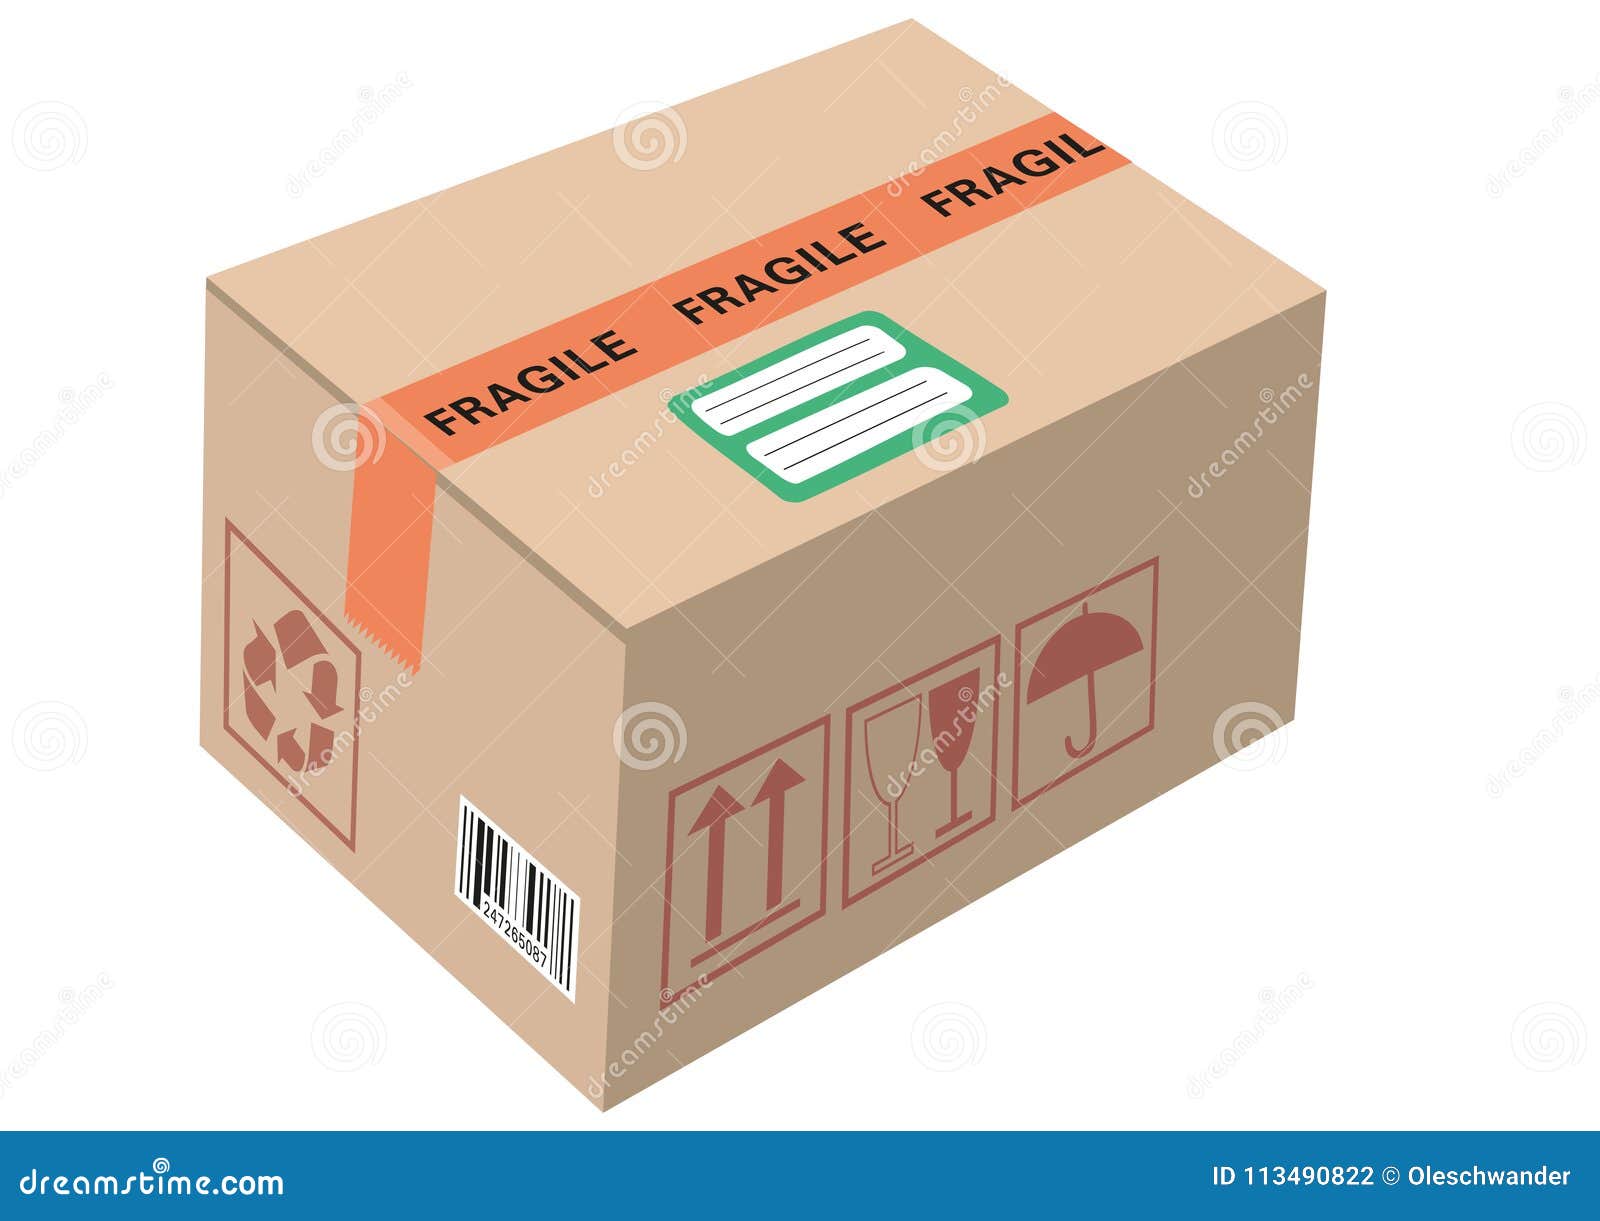 Handling package. Картонная коробка с штрих-кодом. Штрих код на картонной коробке. Штрих код на картонную коробку. Картонная этикетка на контейнер.